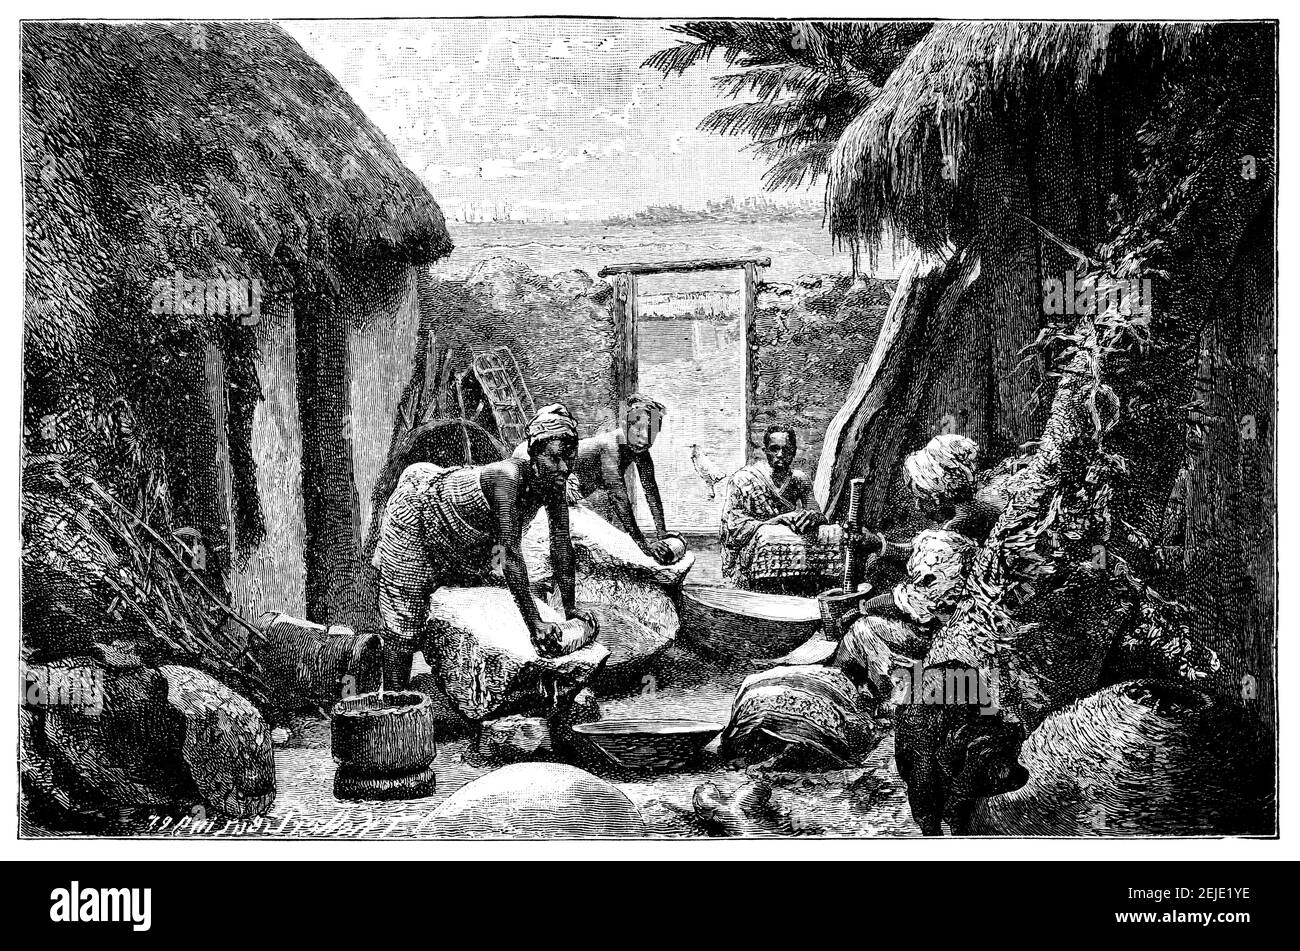 Donne di Accra Milling riso. Oggi Repubblica del Ghana. Cultura e storia dell'Africa occidentale. Immagine in bianco e nero d'epoca. 19 ° secolo. Foto Stock